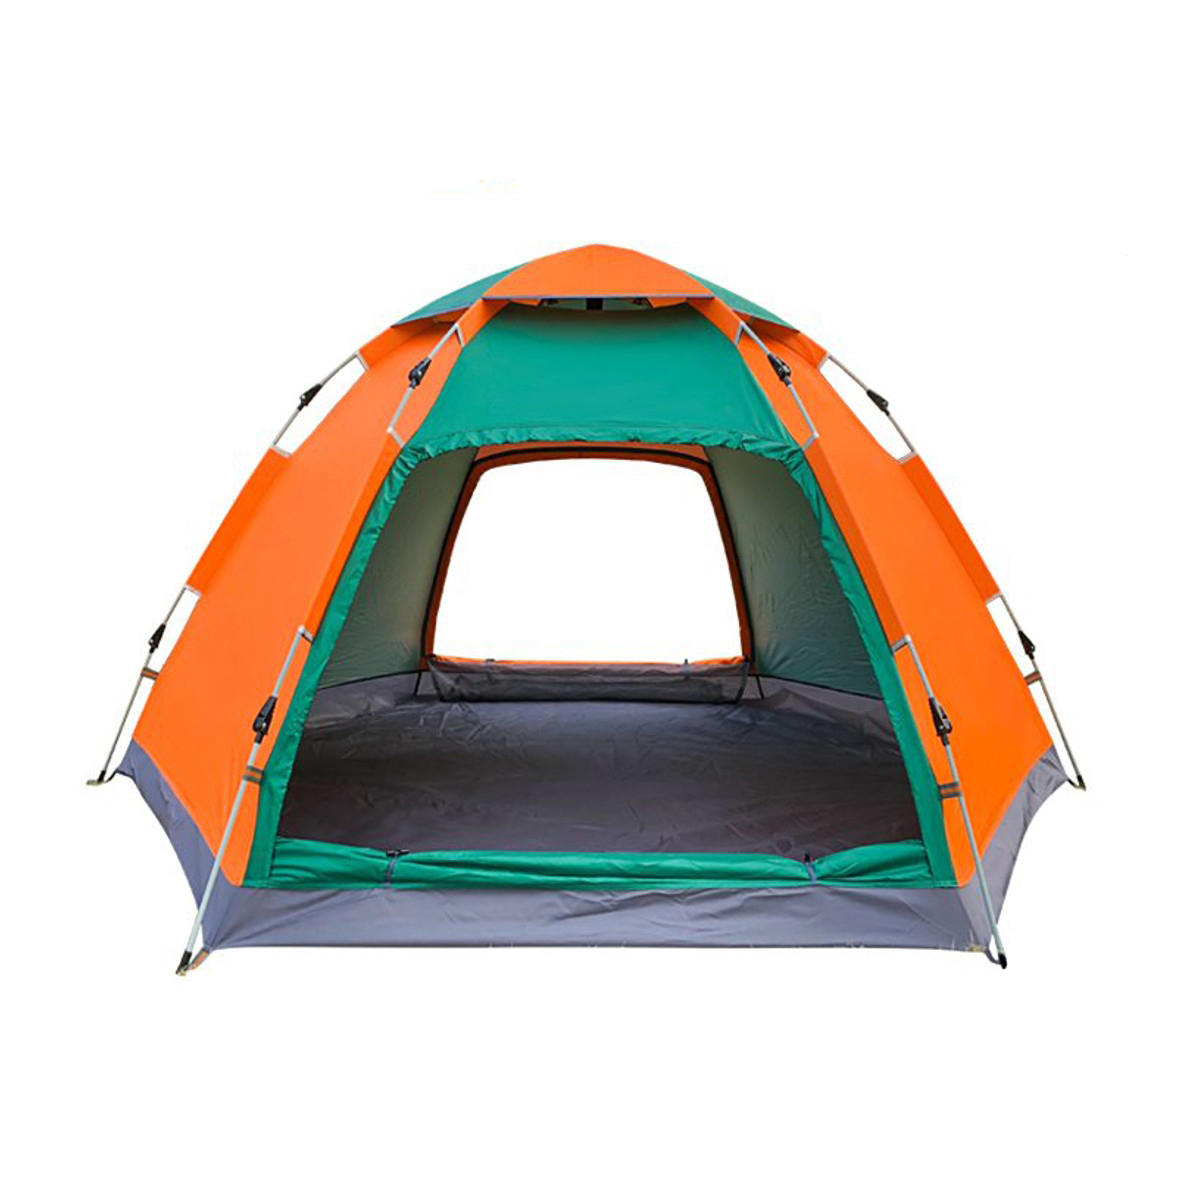 ançais: Tente de camping pour 3-4 personnes en extérieur, ouverture instantanée automatique, grande tente familiale imperméable avec auvent pour protection solaire